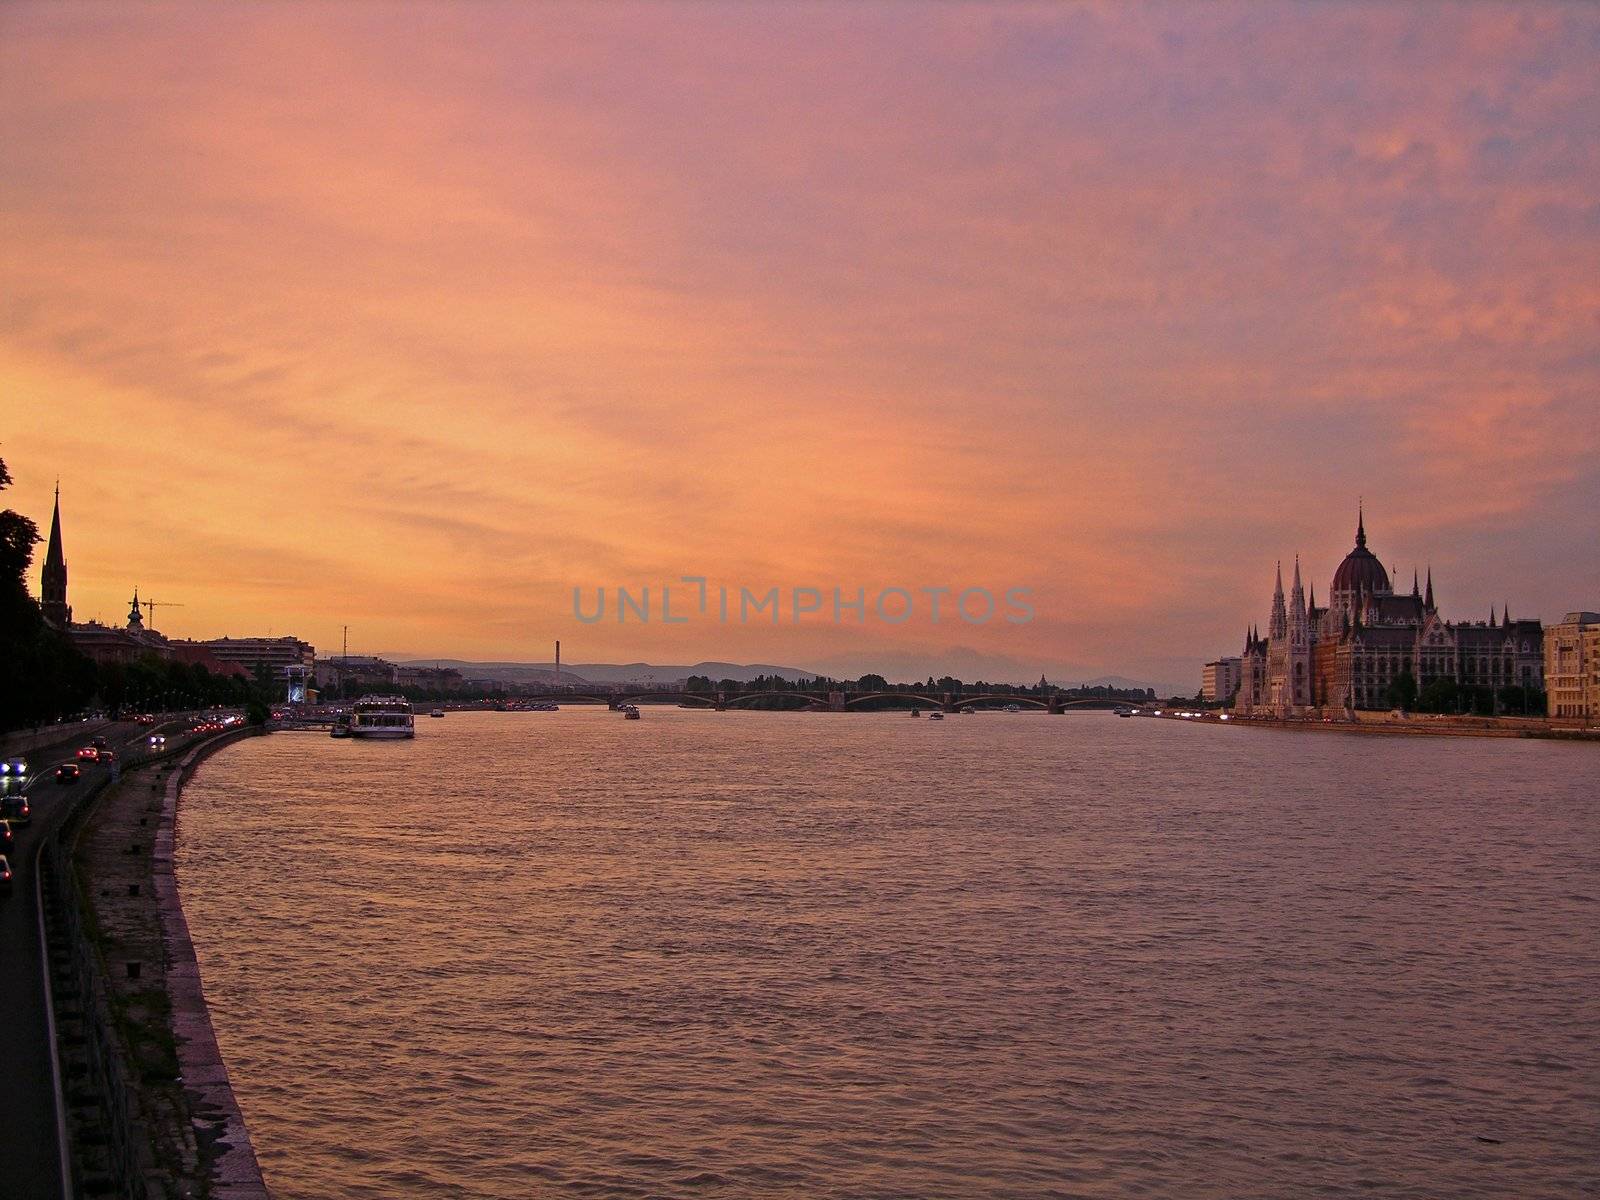 Sunset over the Danube (Budapest)